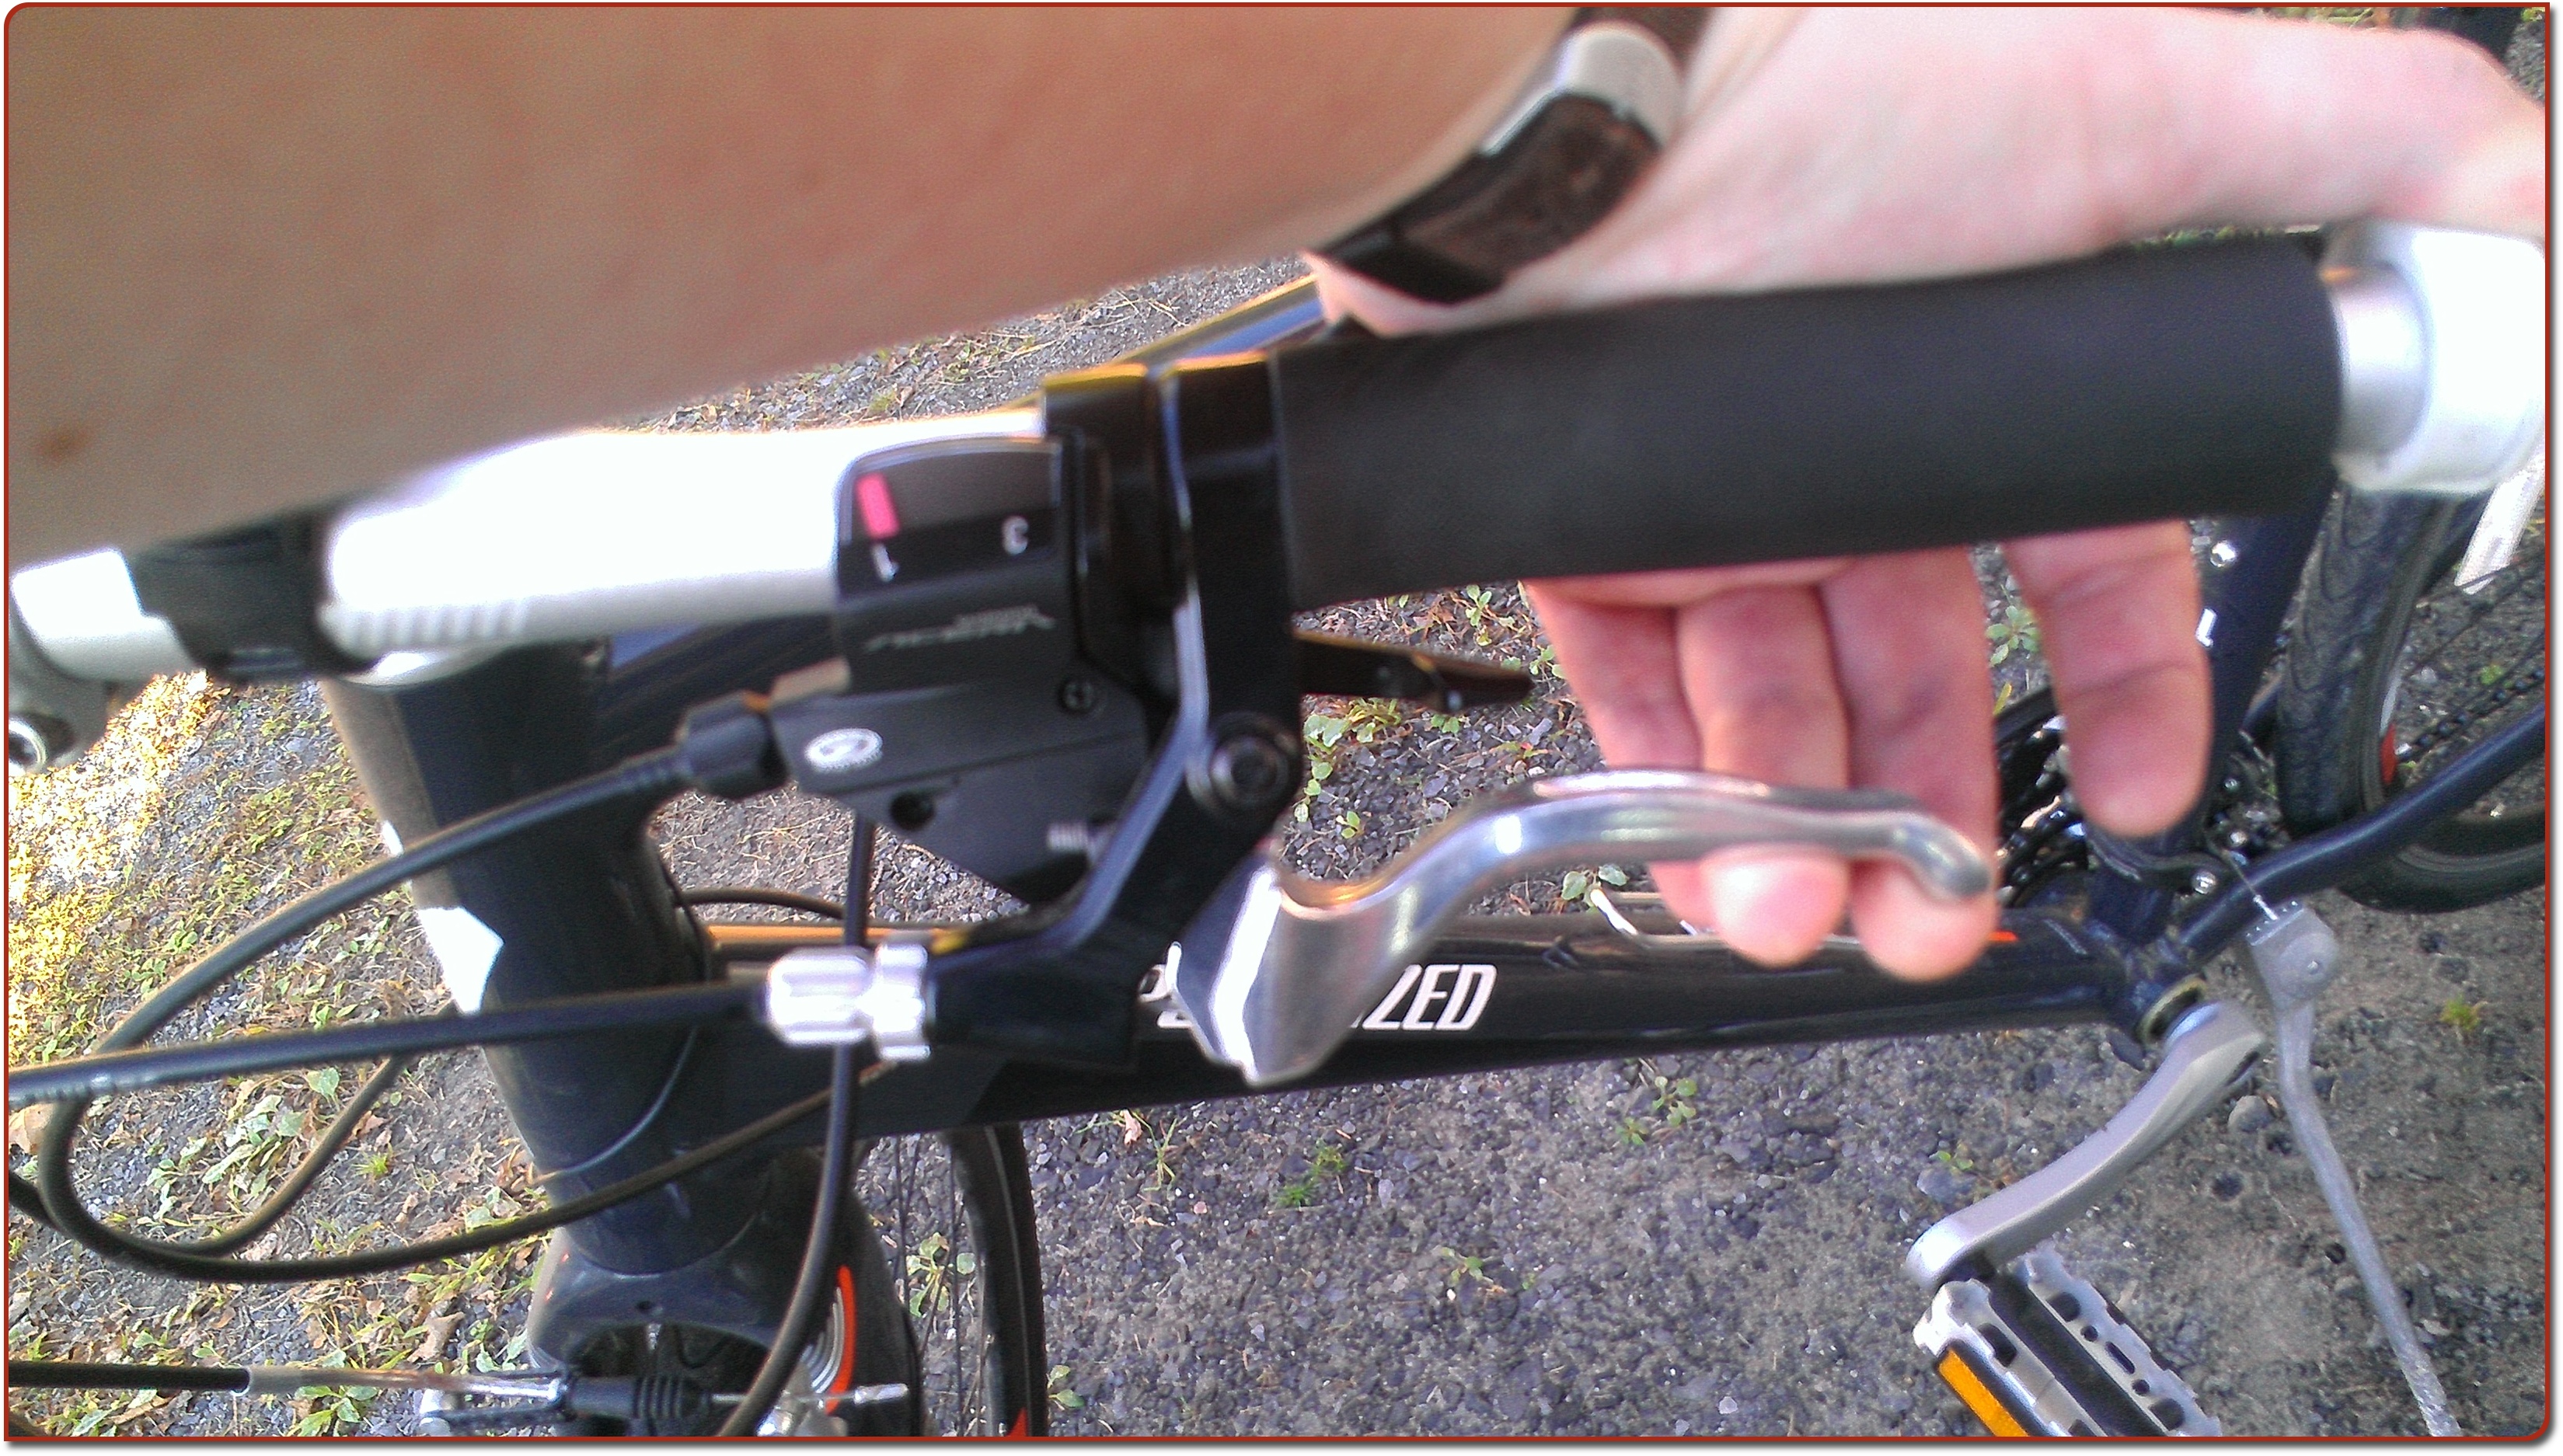 adjusting bicycle hand brakes